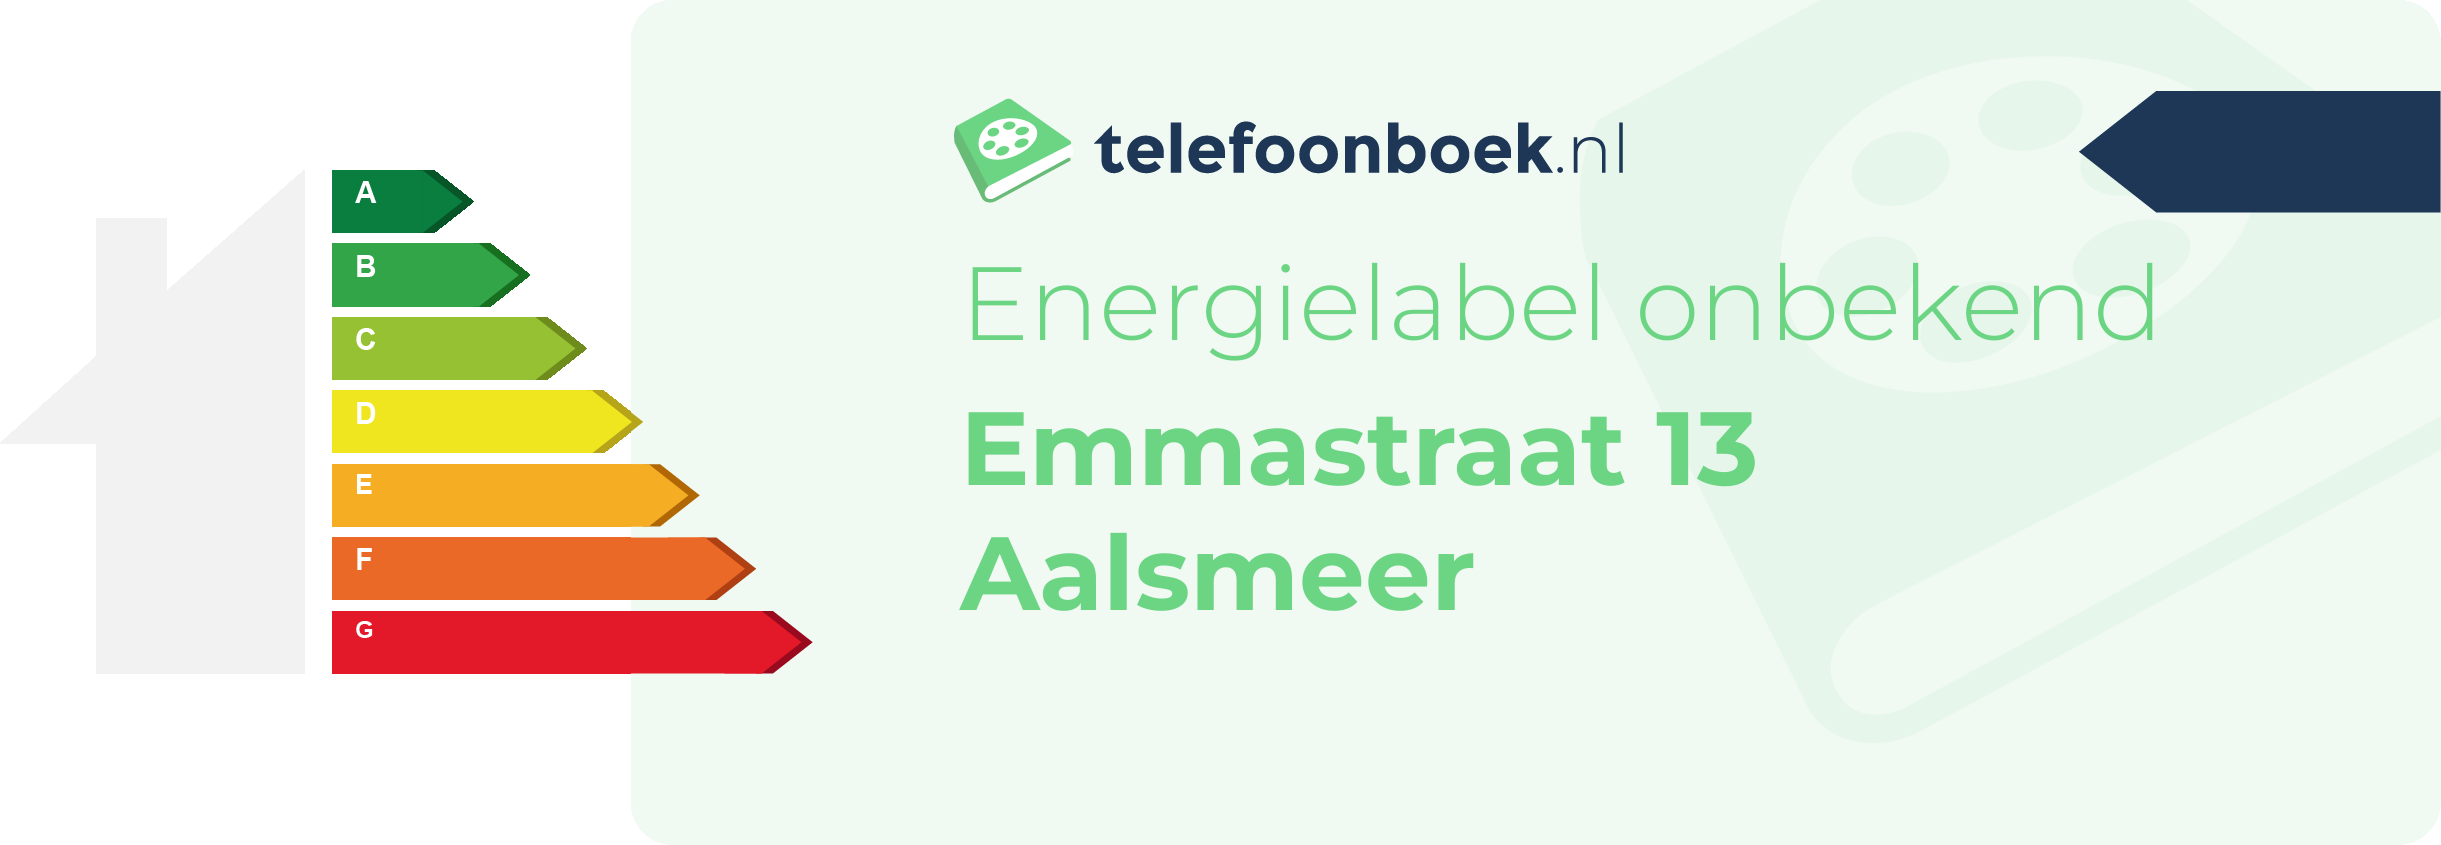 Energielabel Emmastraat 13 Aalsmeer